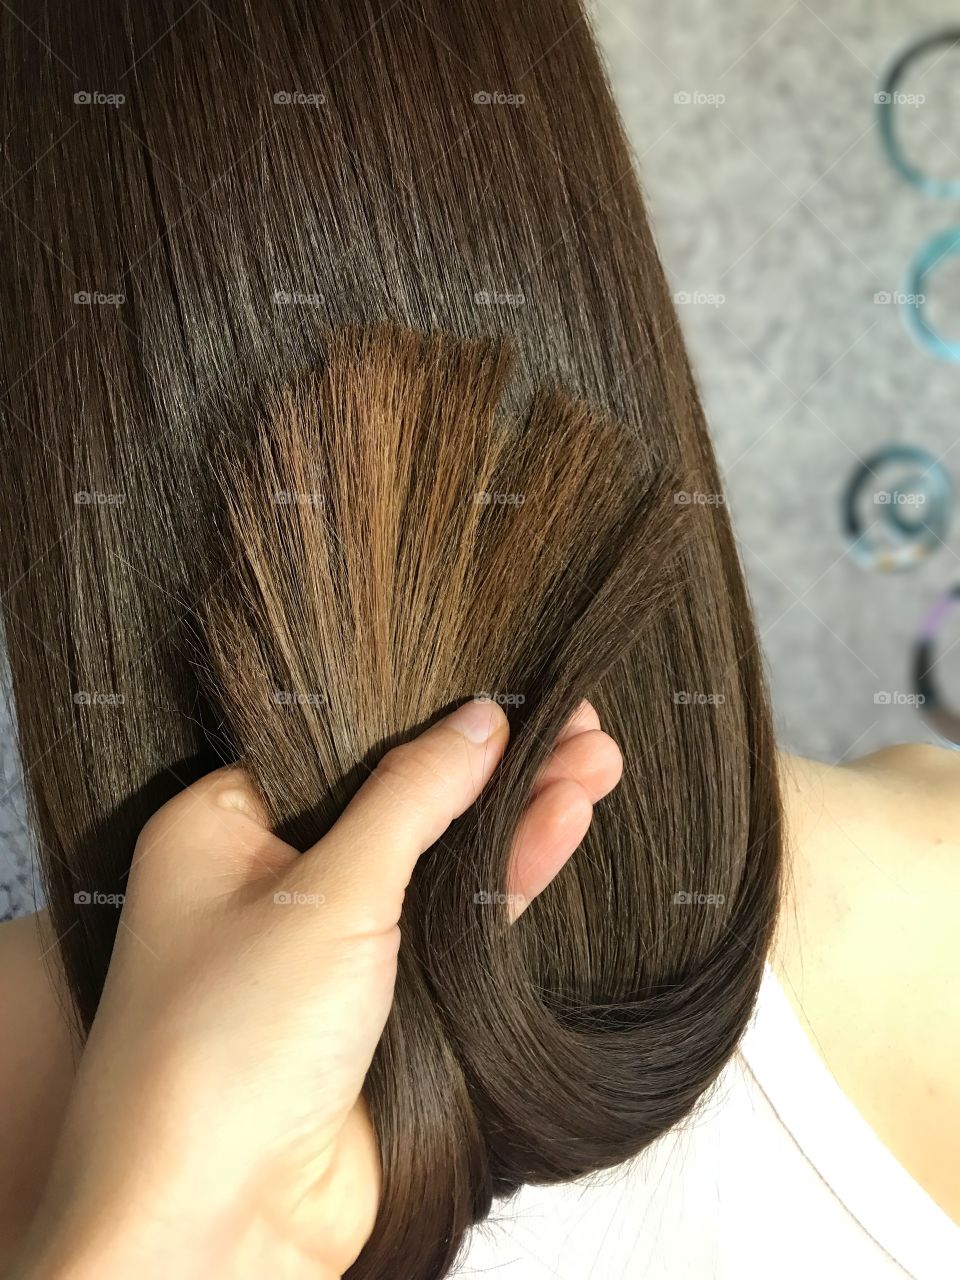 Волосы